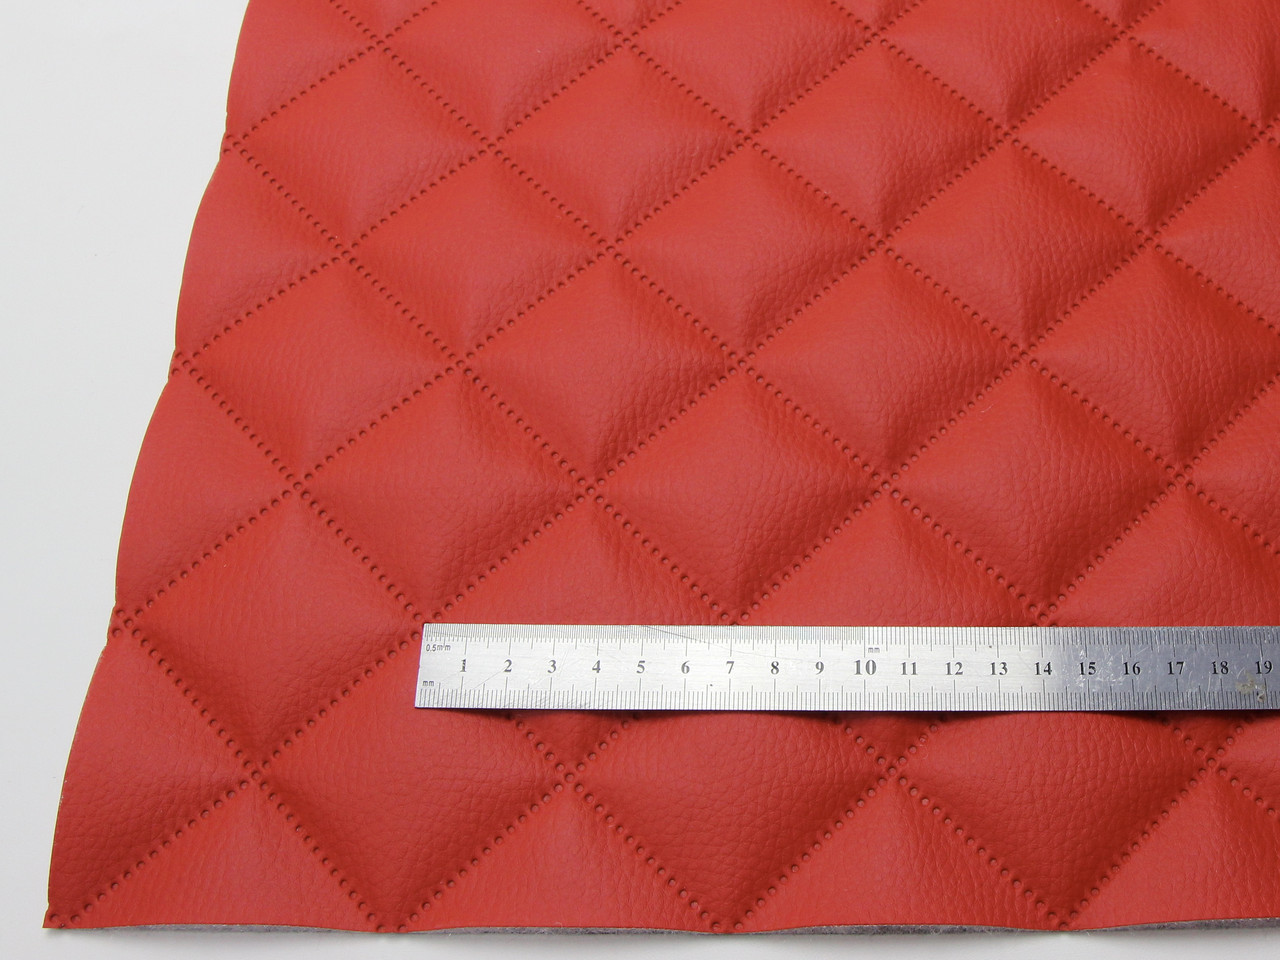 Кожзам термостёганый красный "Квадрат 5х5", дублированный синтепоном 3мм и флизелином, ширина 1,40м детальная фотка